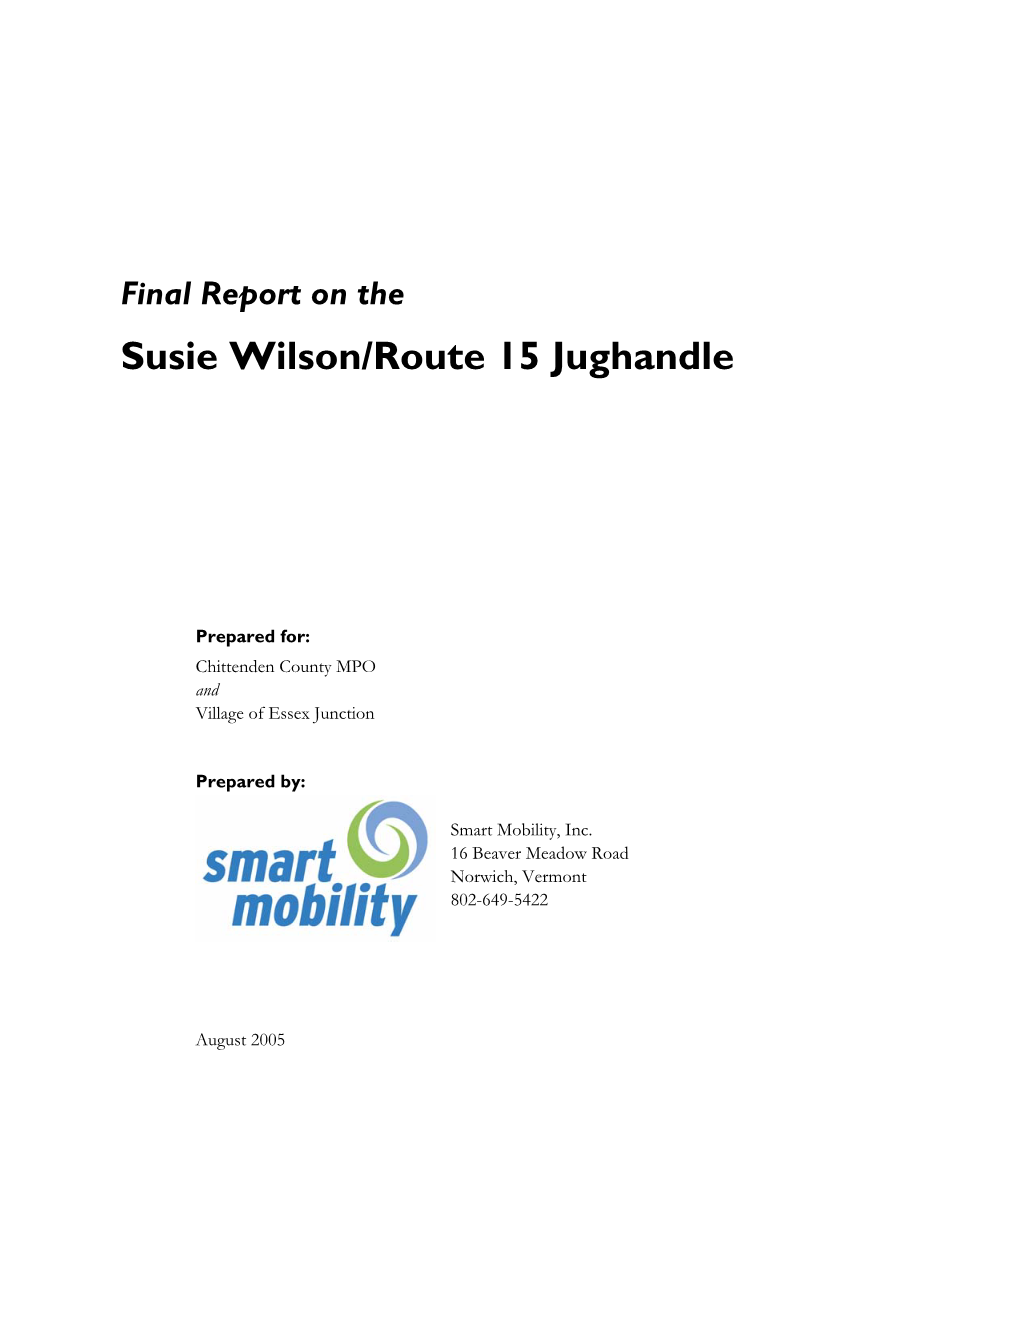 Susie Wilson/Route 15 Jughandle